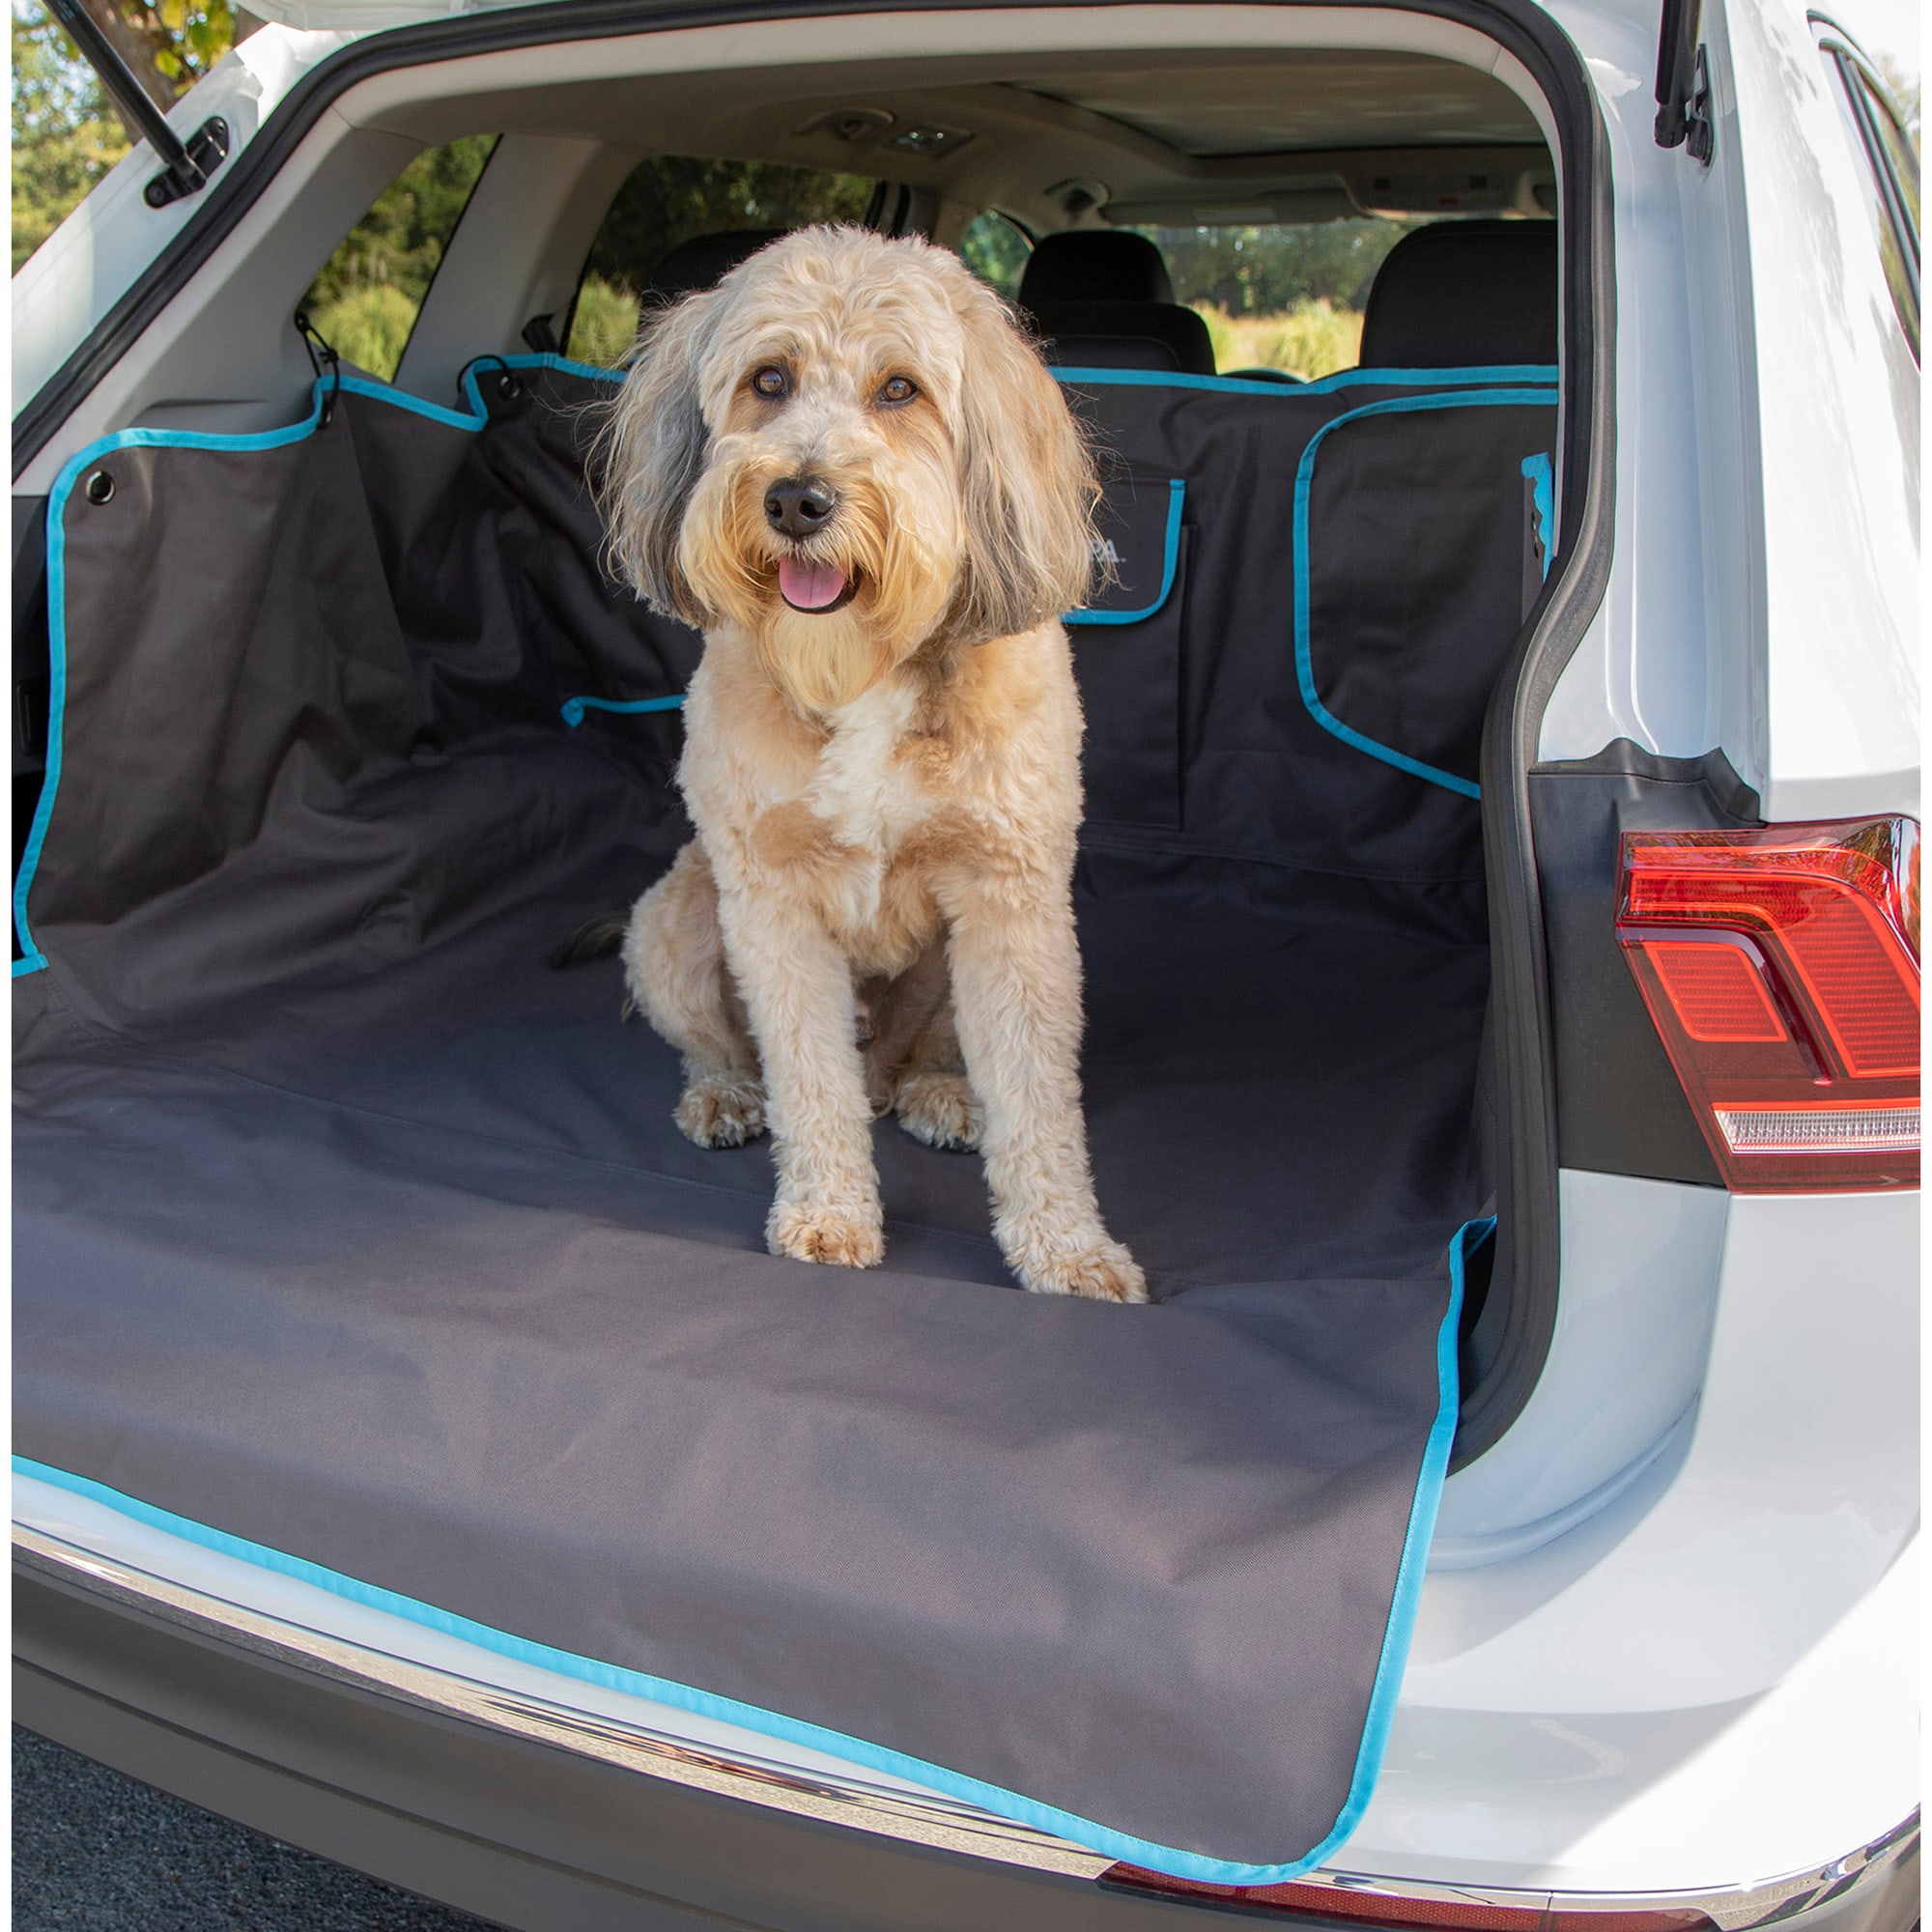 DOG CAR TRUNK COVER - Buy in PrimePet